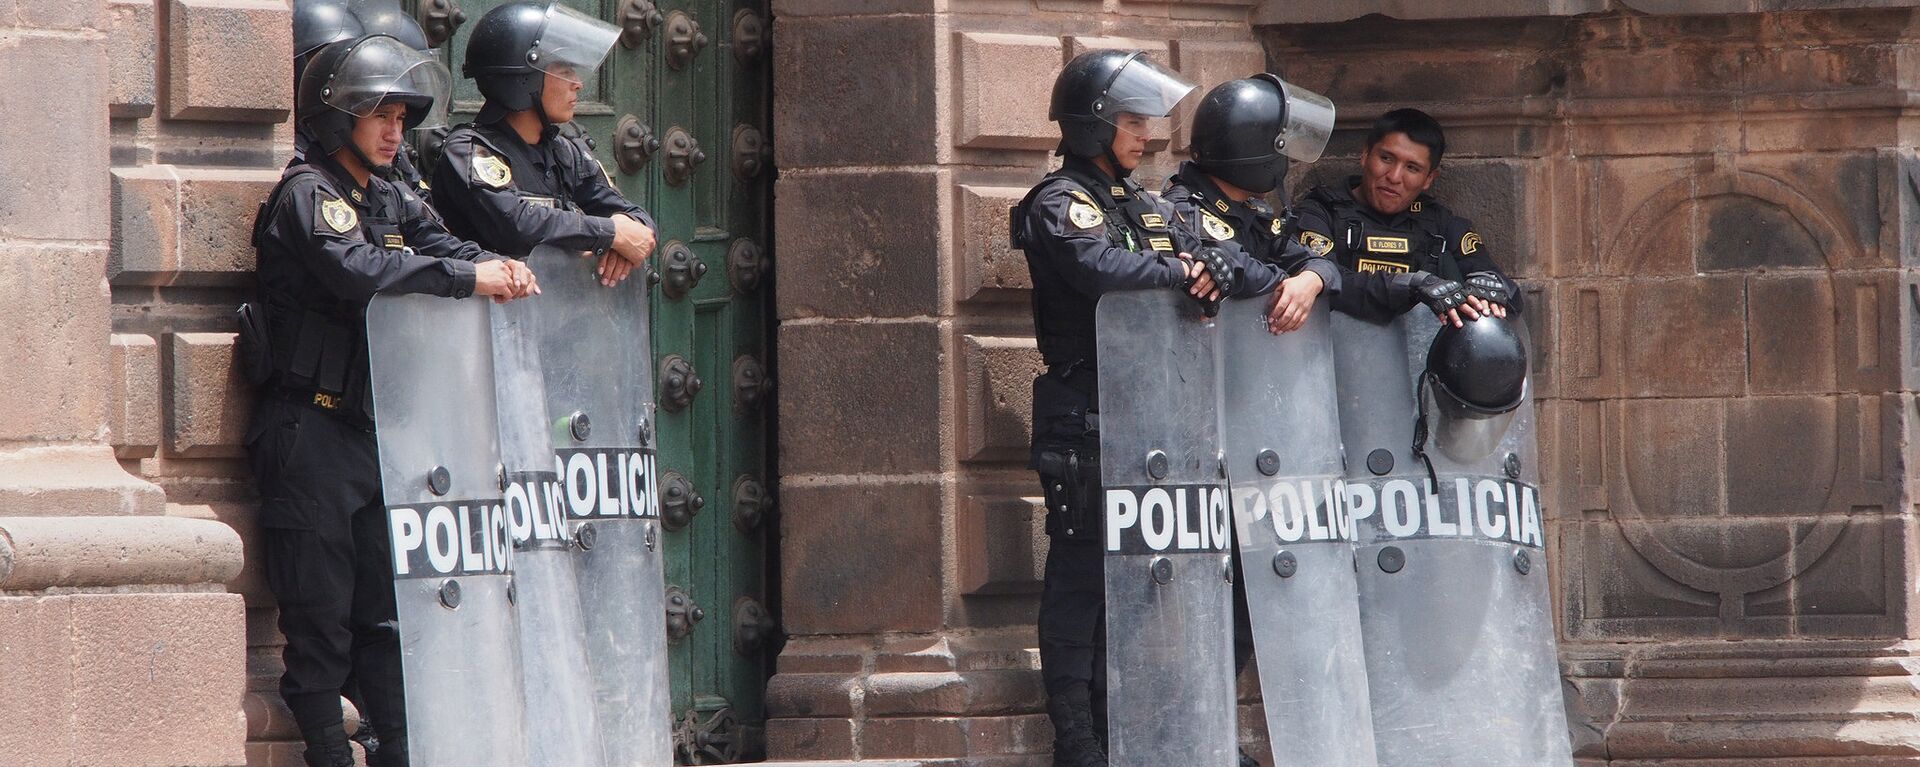 Policías peruanos en Cuzco - Sputnik Mundo, 1920, 05.08.2021